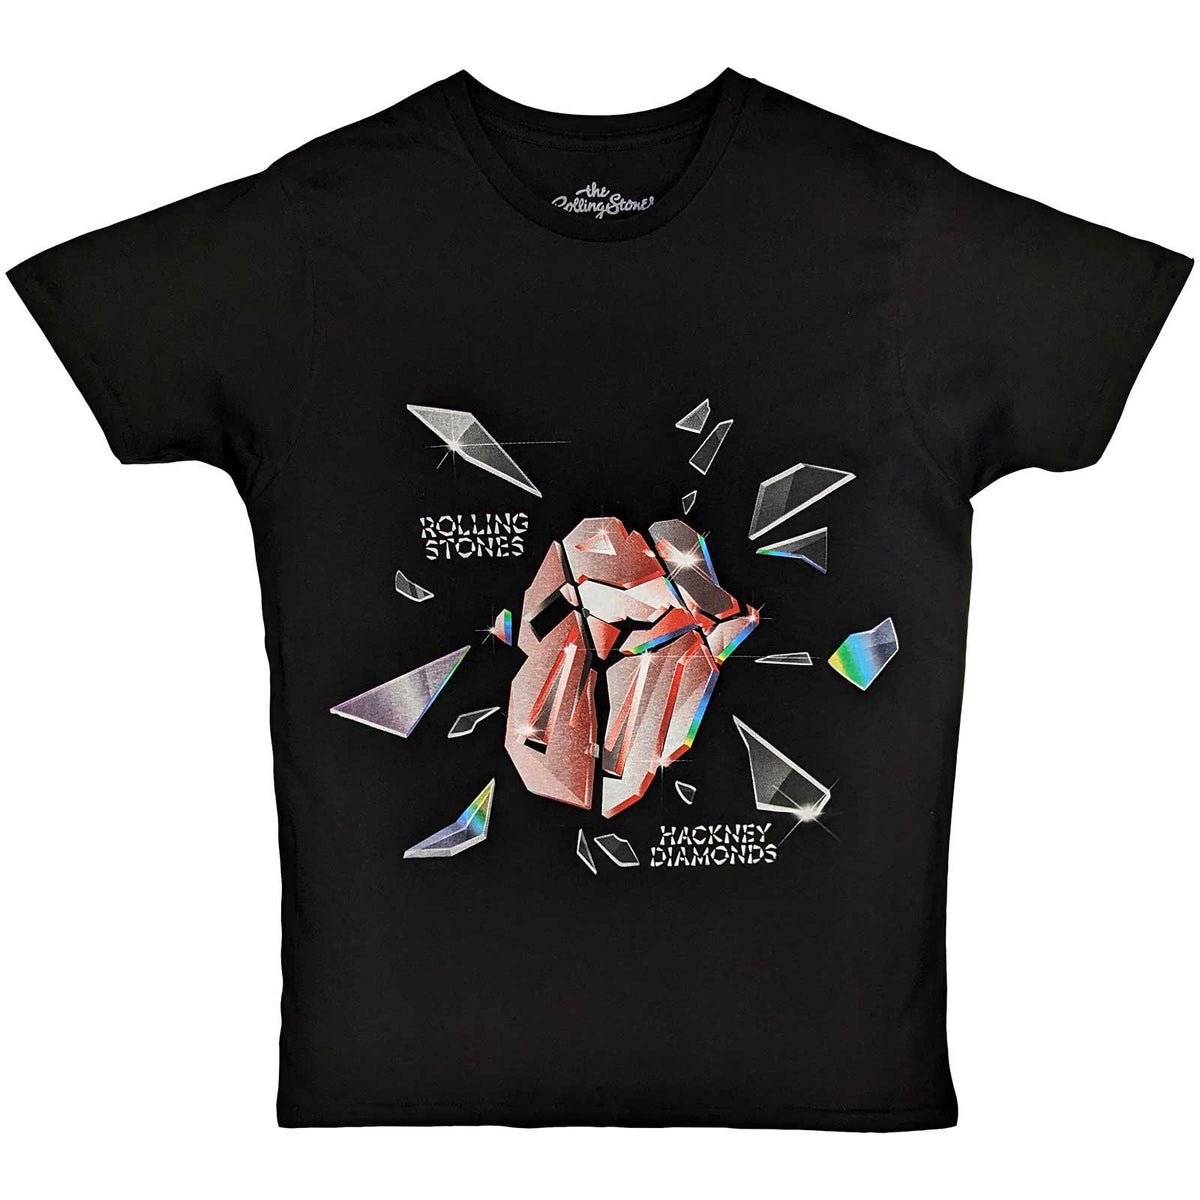 T-shirt pour adulte des Rolling Stones – Hackney Diamonds Explosion – Design sous licence officielle